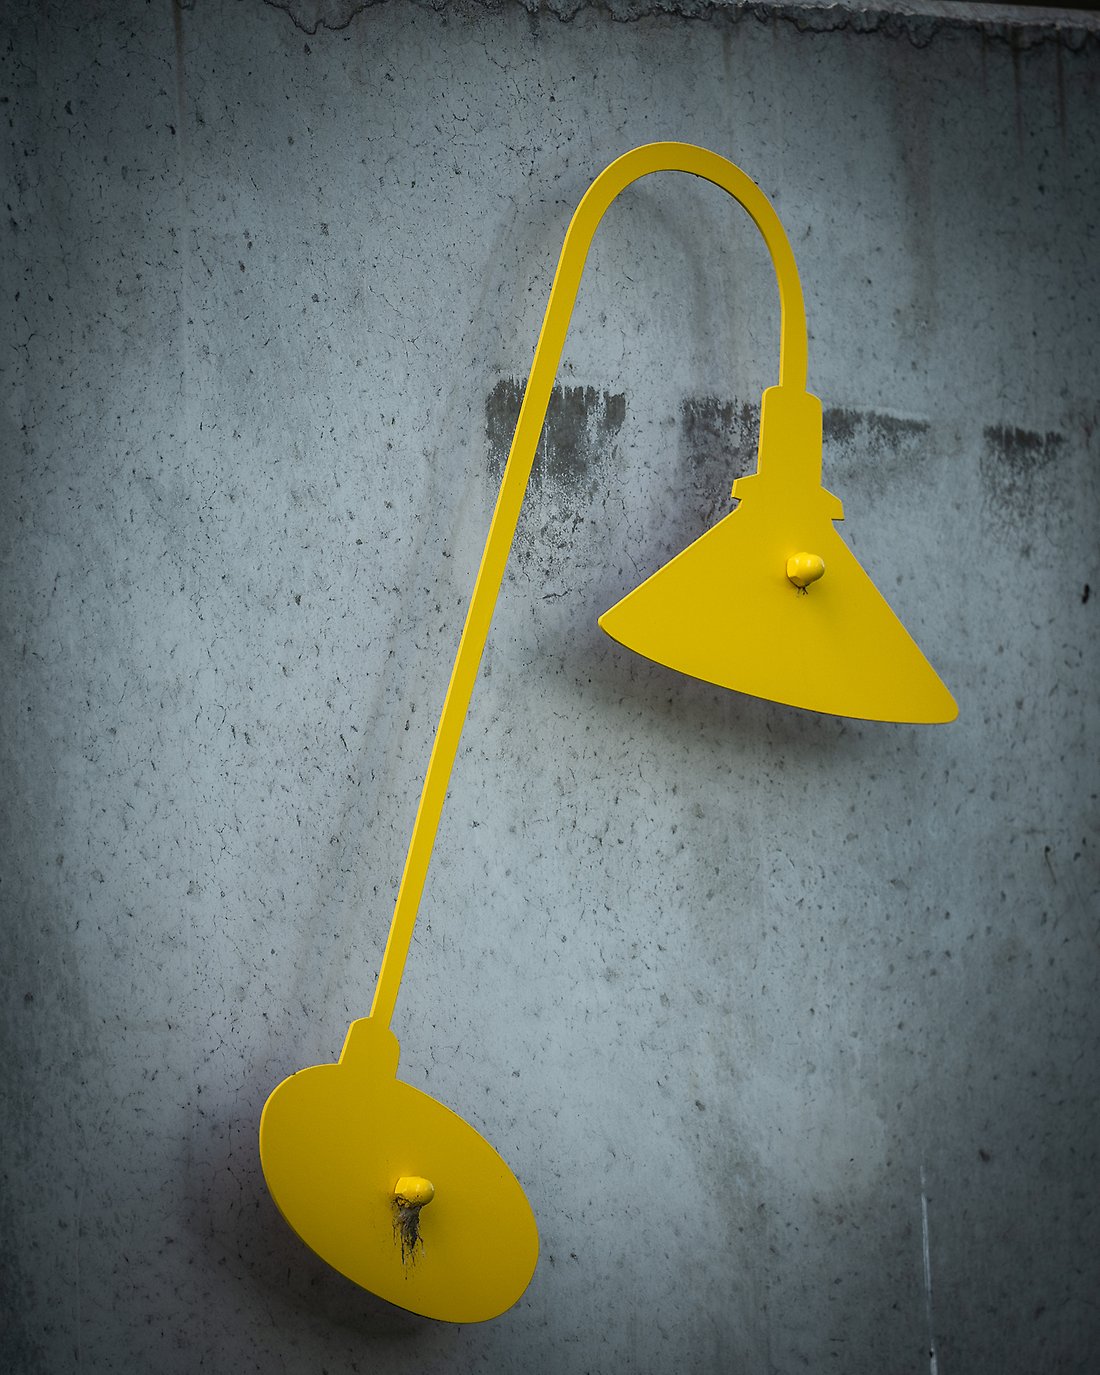 Närbild av en del av Huller om buller, siluetten en lampa i gul plåt